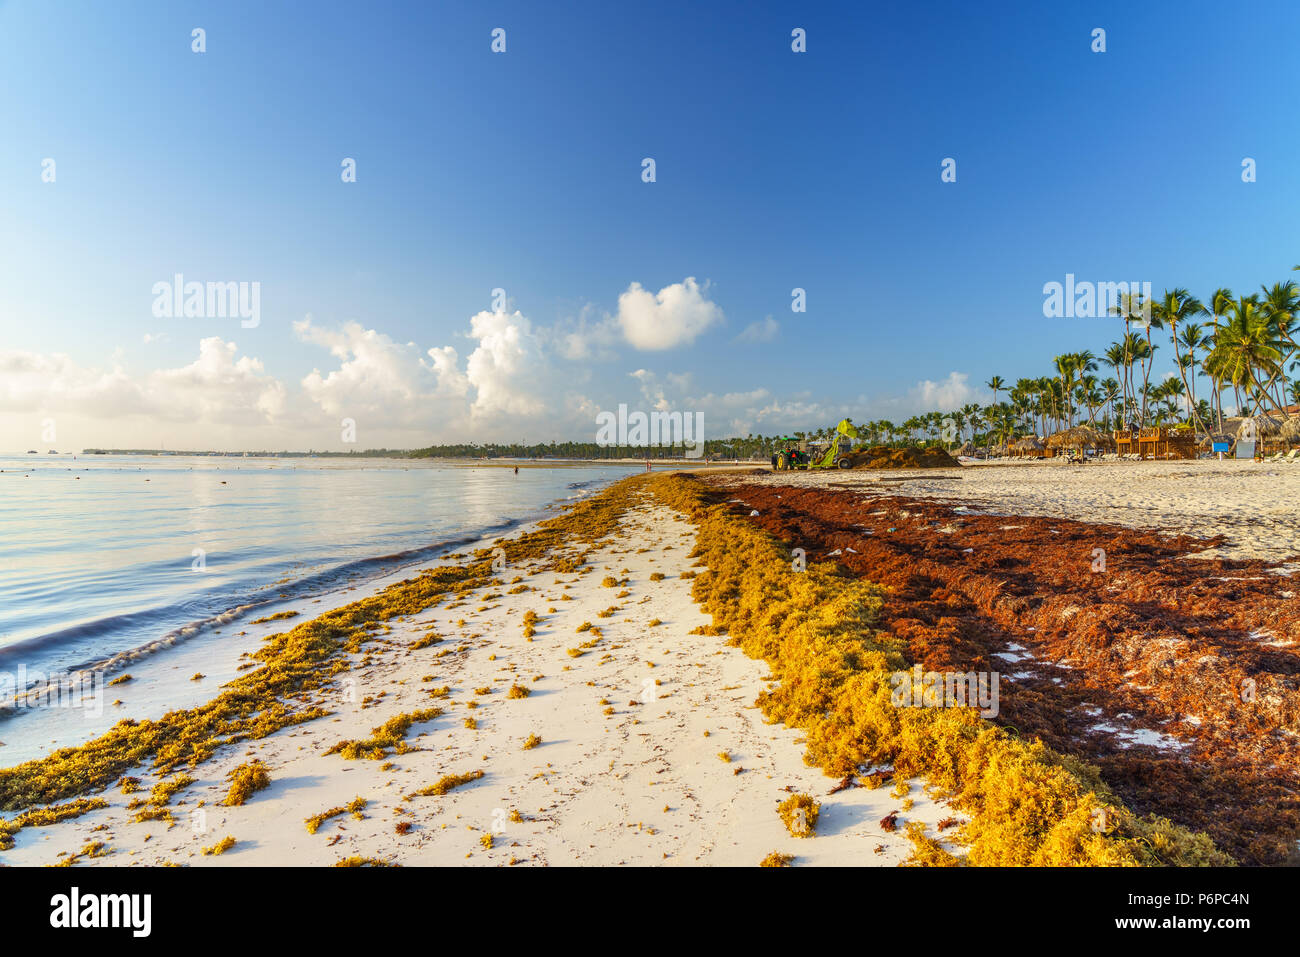 Punta Cana, República Dominicana - Junio 19, 2018: sargassum algas marinas en el océano beaytiful en playa Bávaro, Punta Cana, el resultado del calentamiento global al cambio climático. Foto de stock